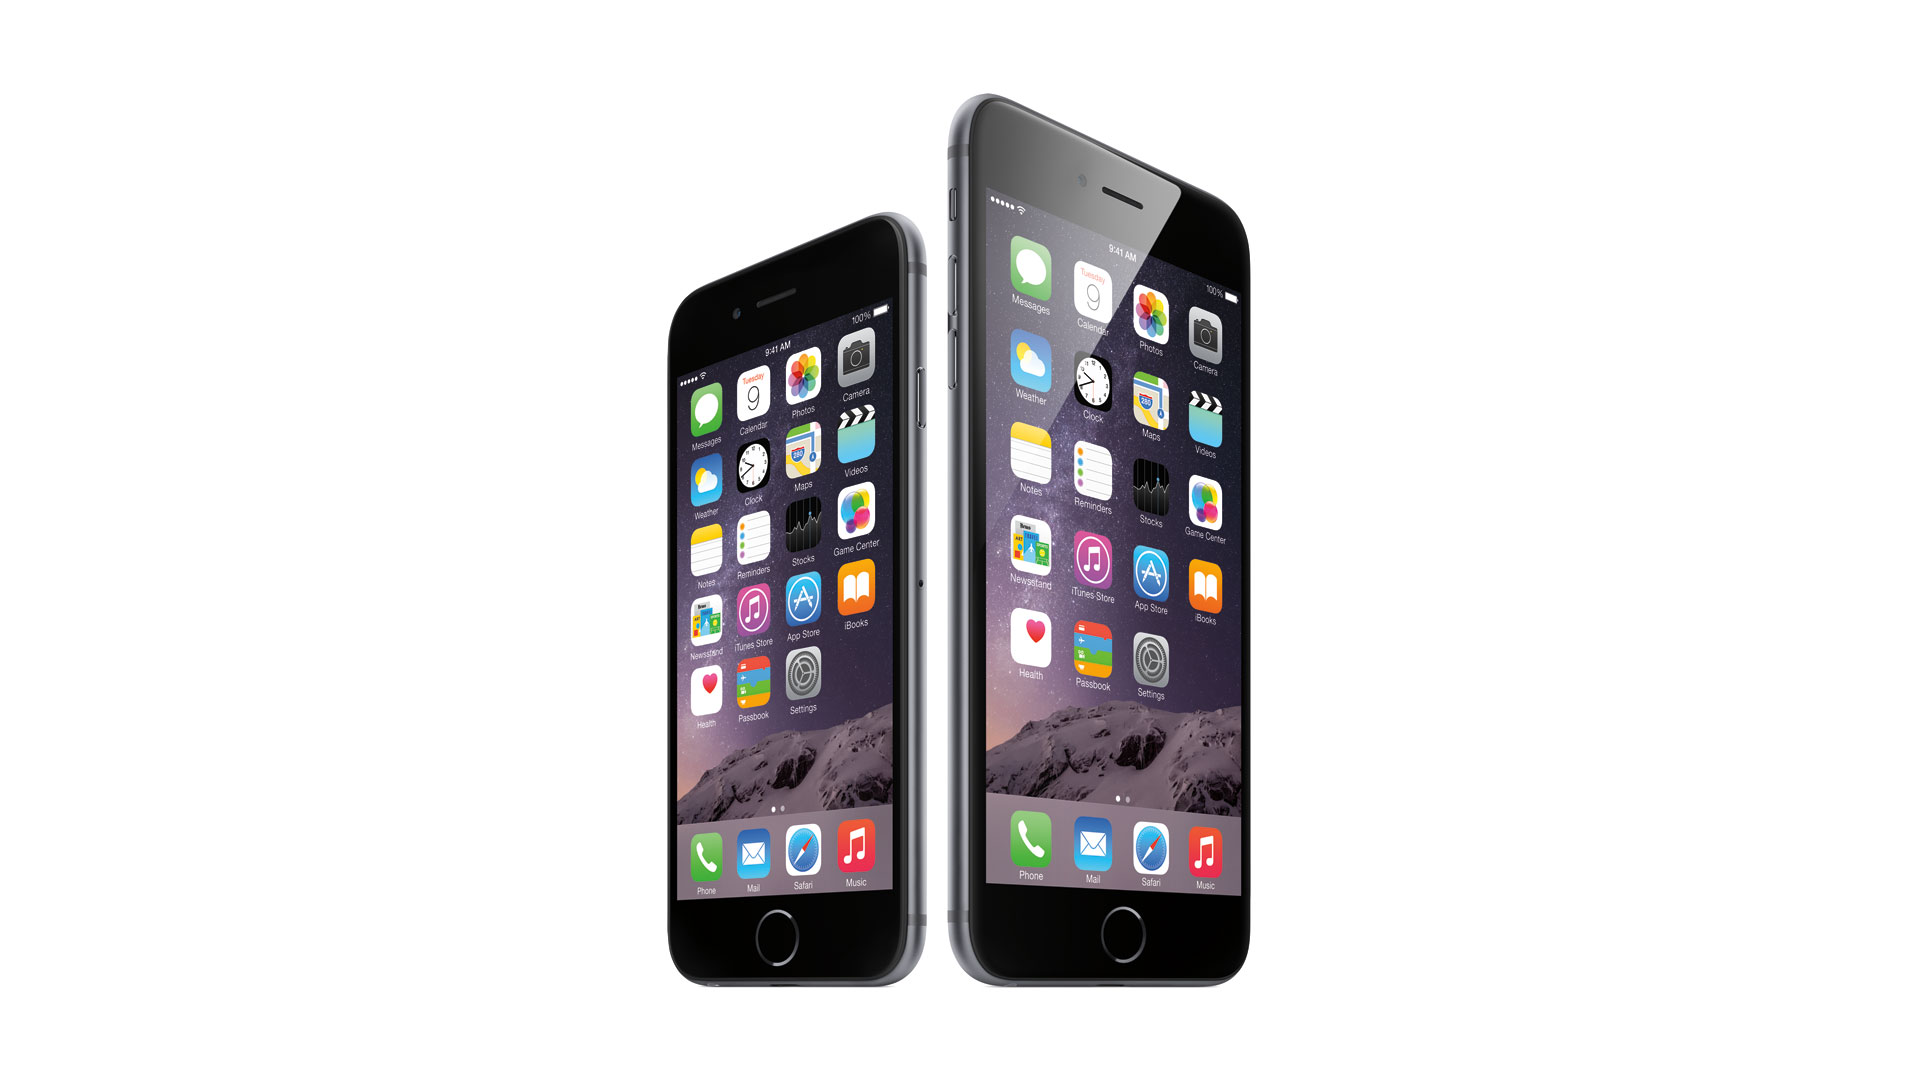 iPhone-6-vs-iPhone-6-Plus